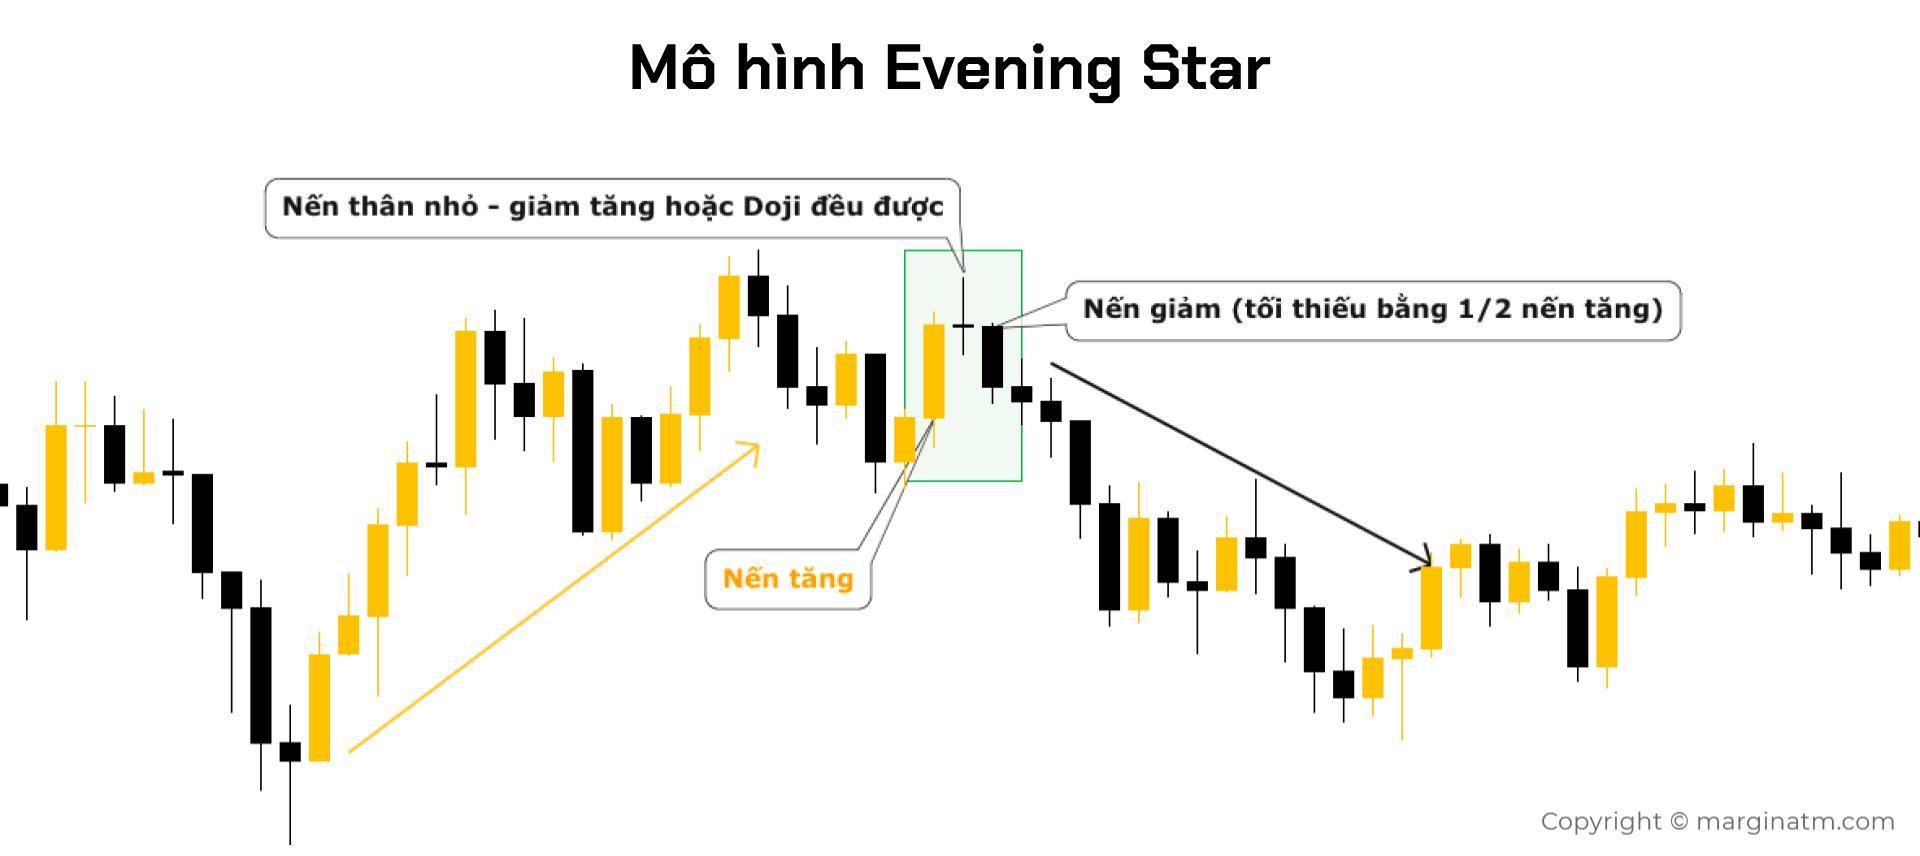 mô hình evening star 2